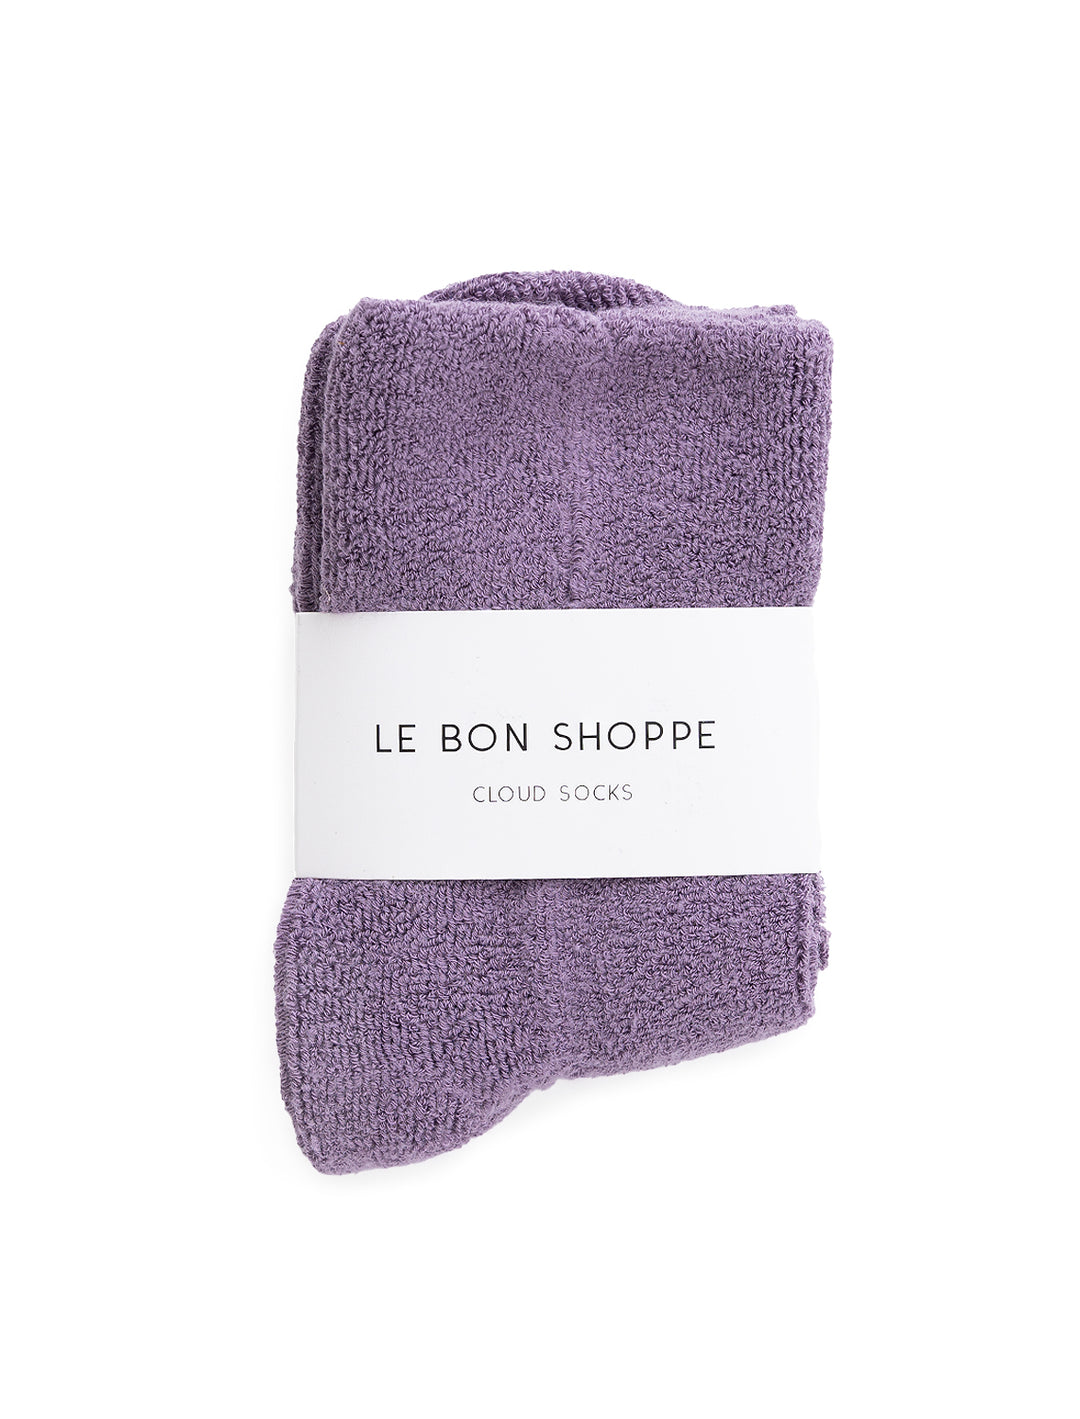 Front view of Le Bon Shoppe's cloud socks in plum.